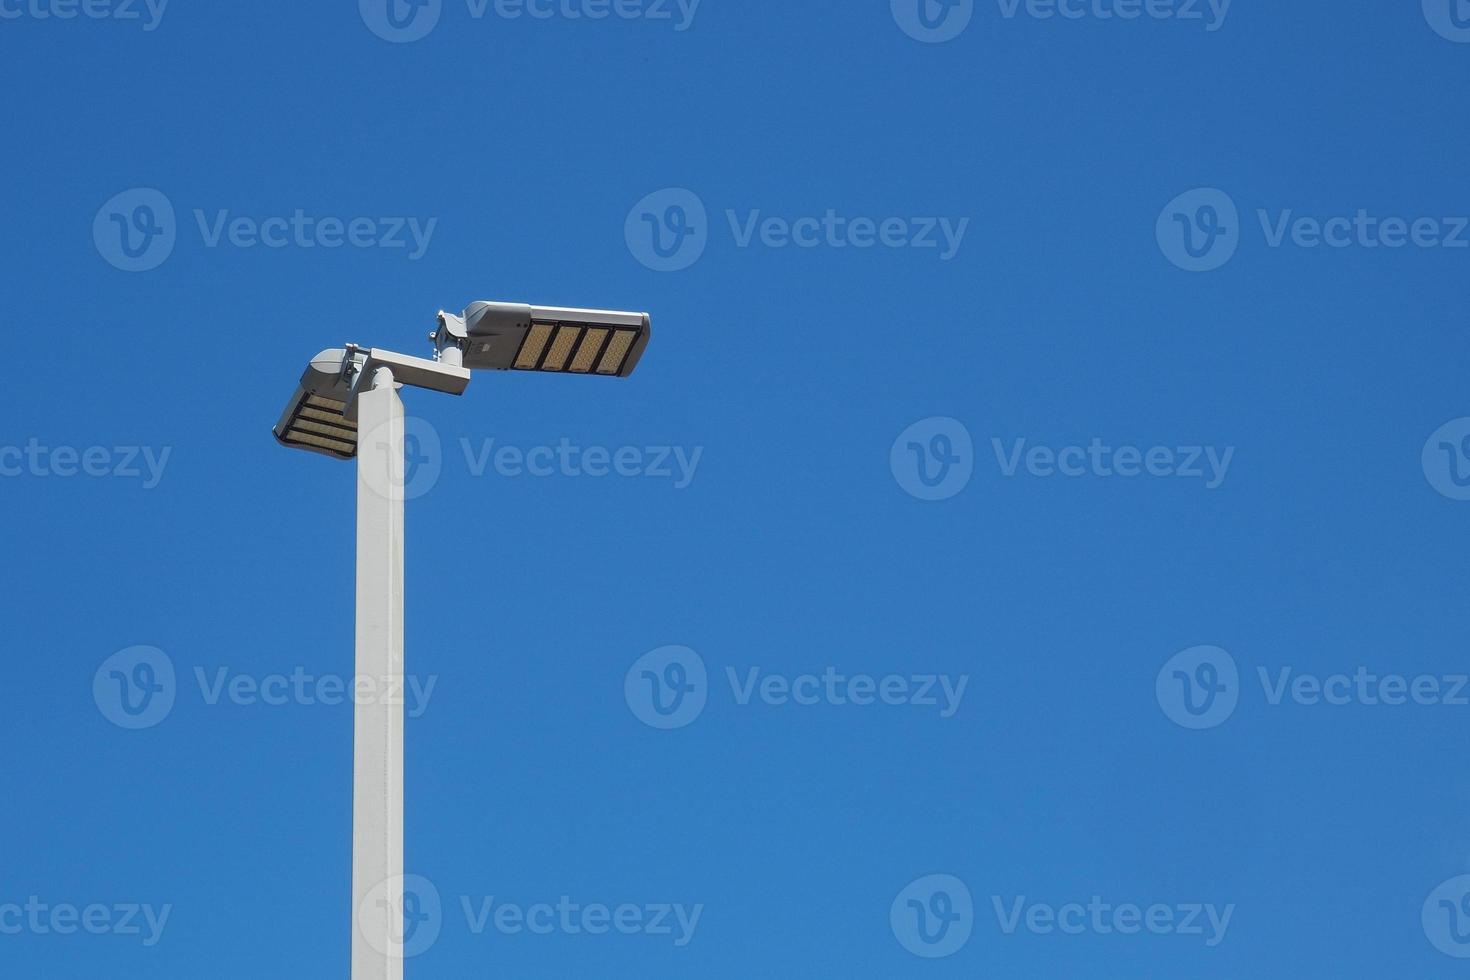 Strommasten für die Beleuchtung nutzen Sonnenenergie. sauberes energiekonzept alternative energie solarenergie foto